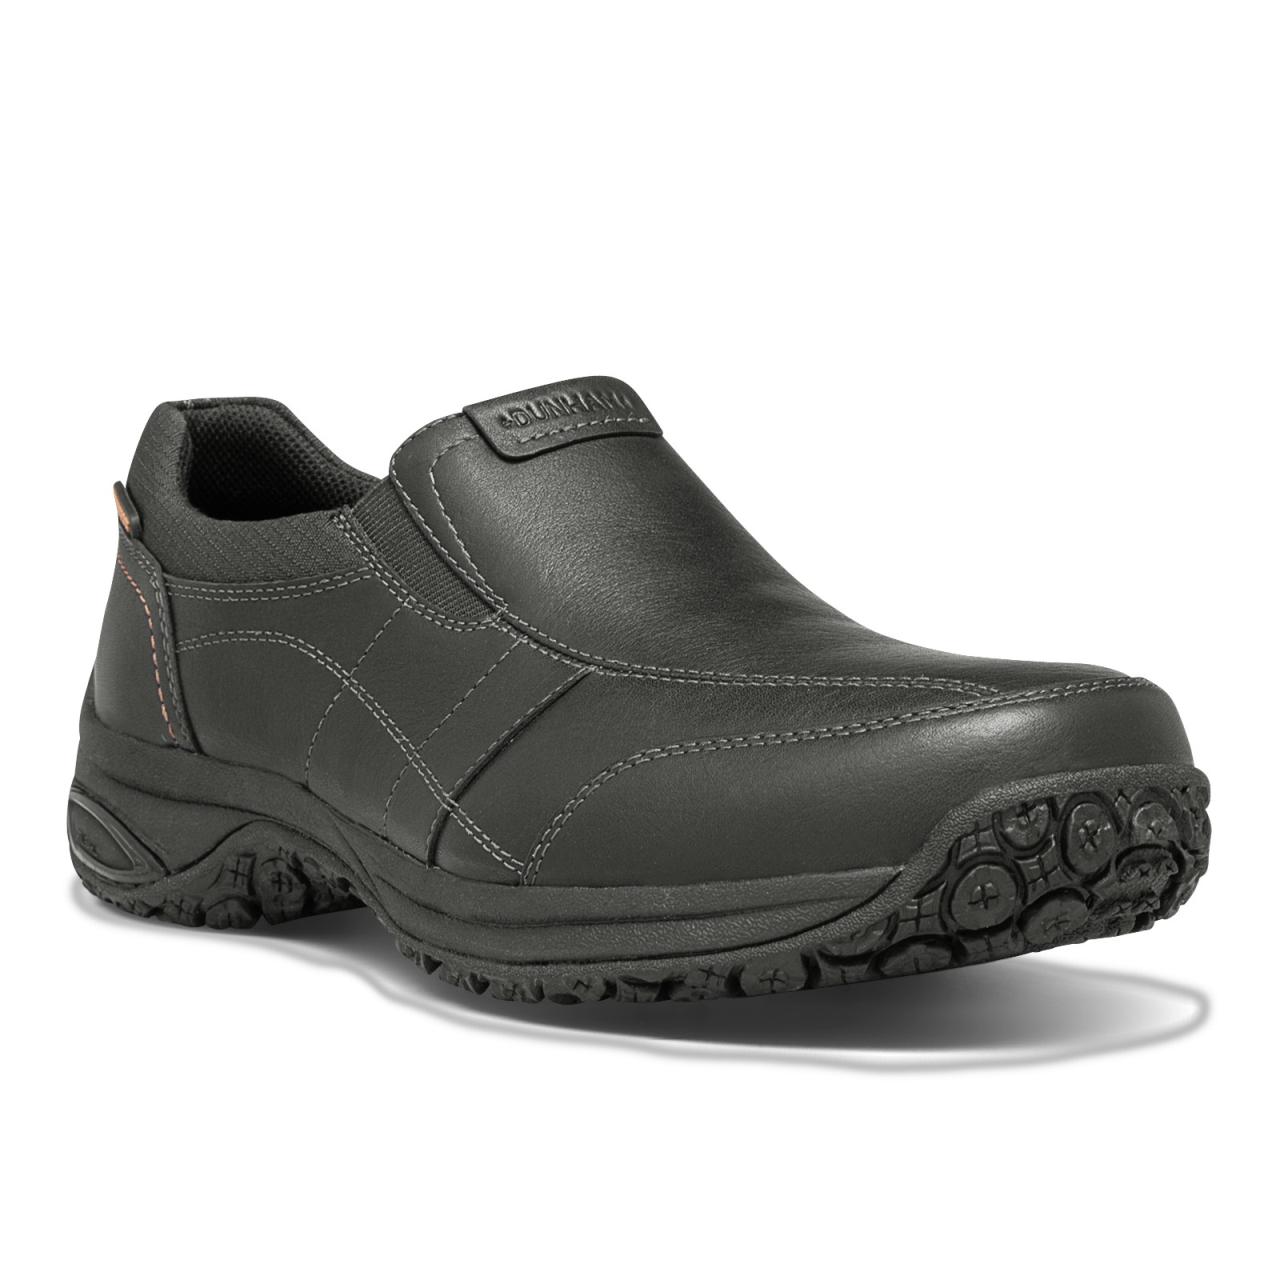 Waterproof Shoes - Slip Resistant 